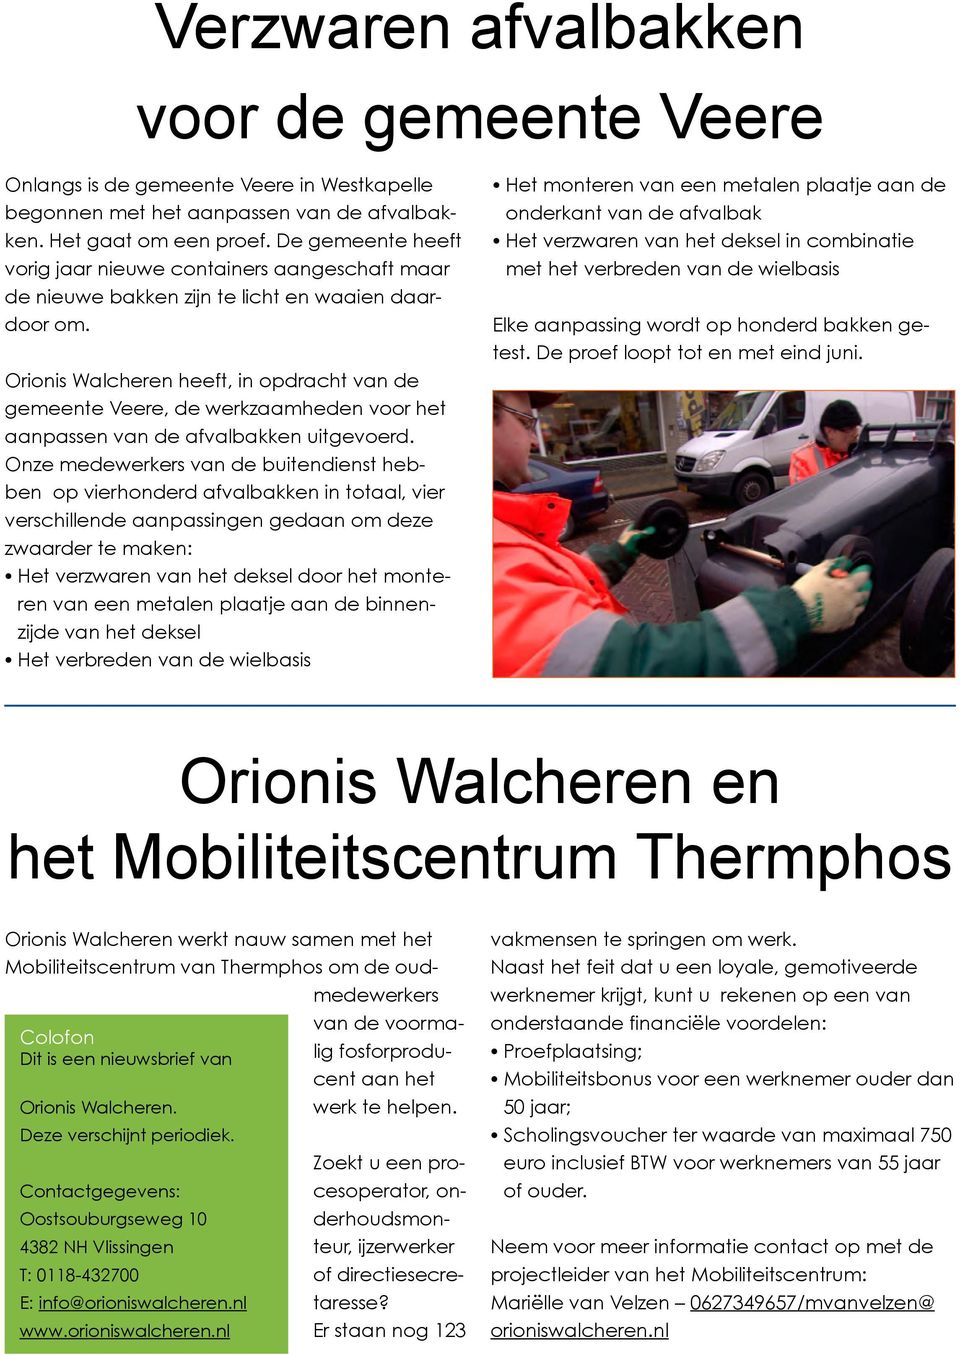 Orionis Walcheren heeft, in opdracht van de gemeente Veere, de werkzaamheden voor het aanpassen van de afvalbakken uitgevoerd.